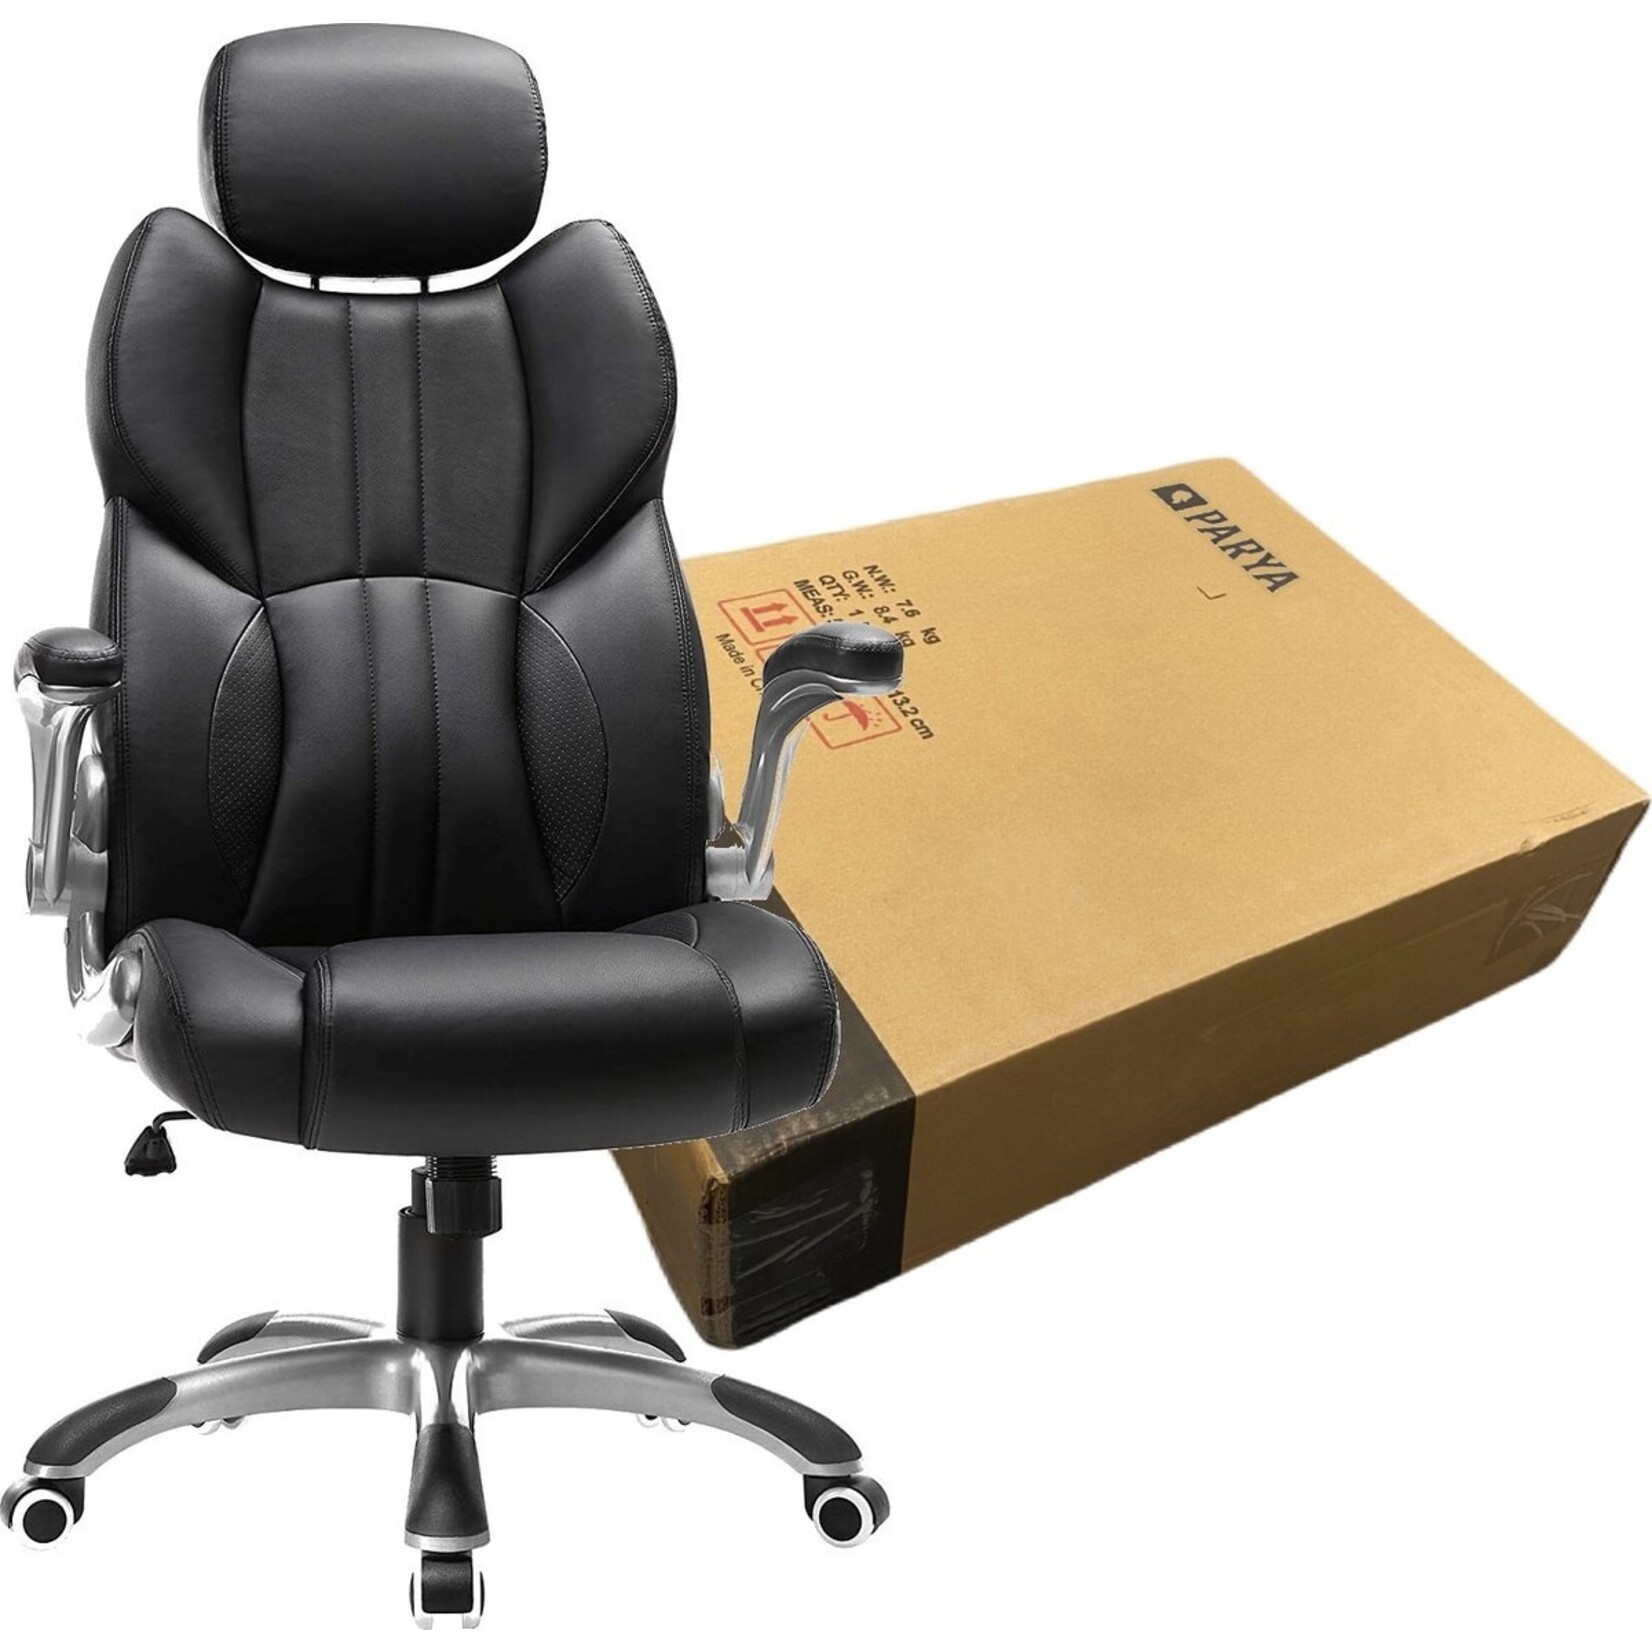 Bobbel Home Dok Home - Ergonomic office chair - Black